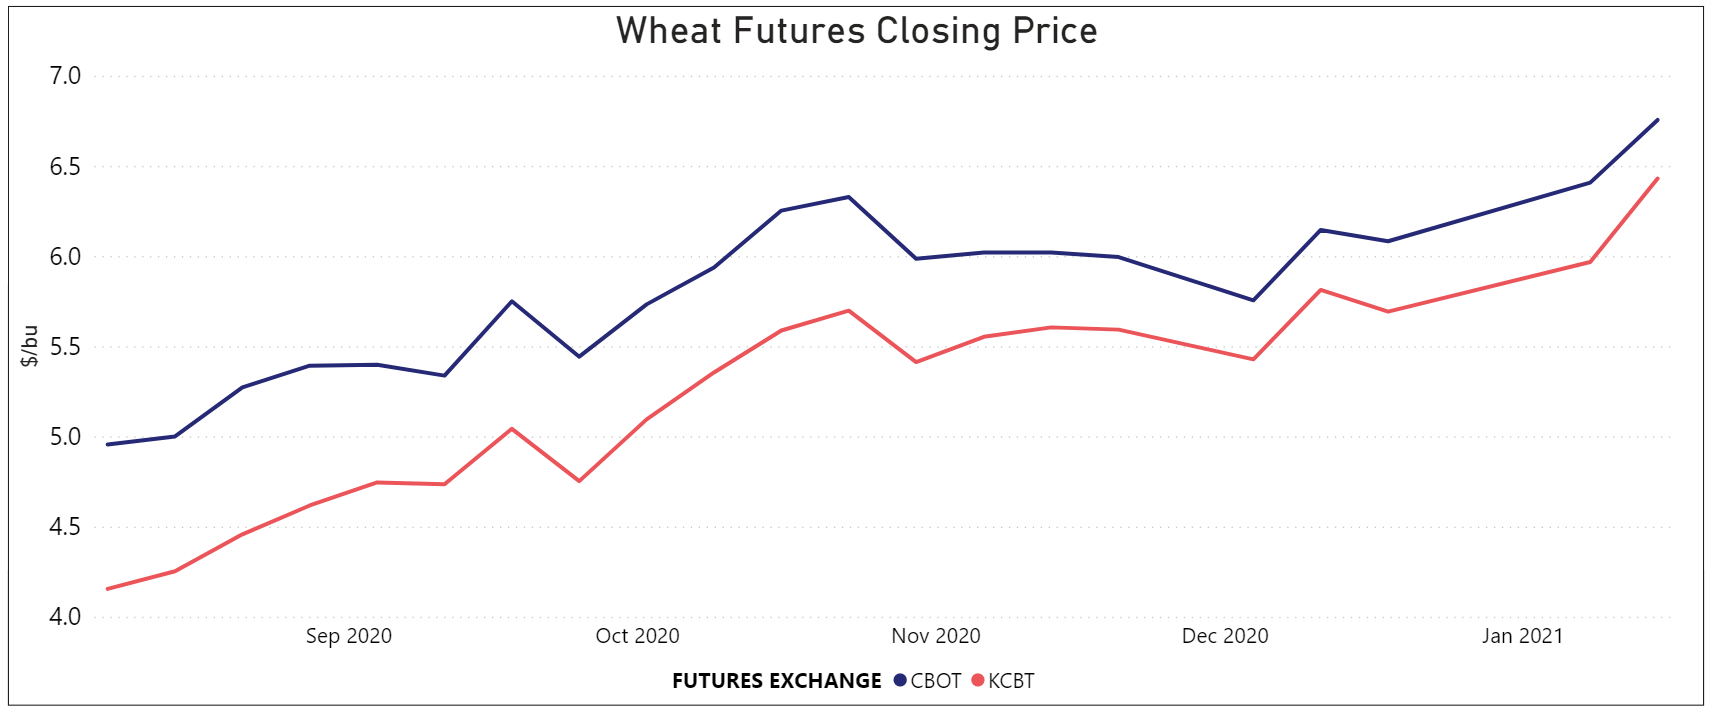 Wheat futures closing price